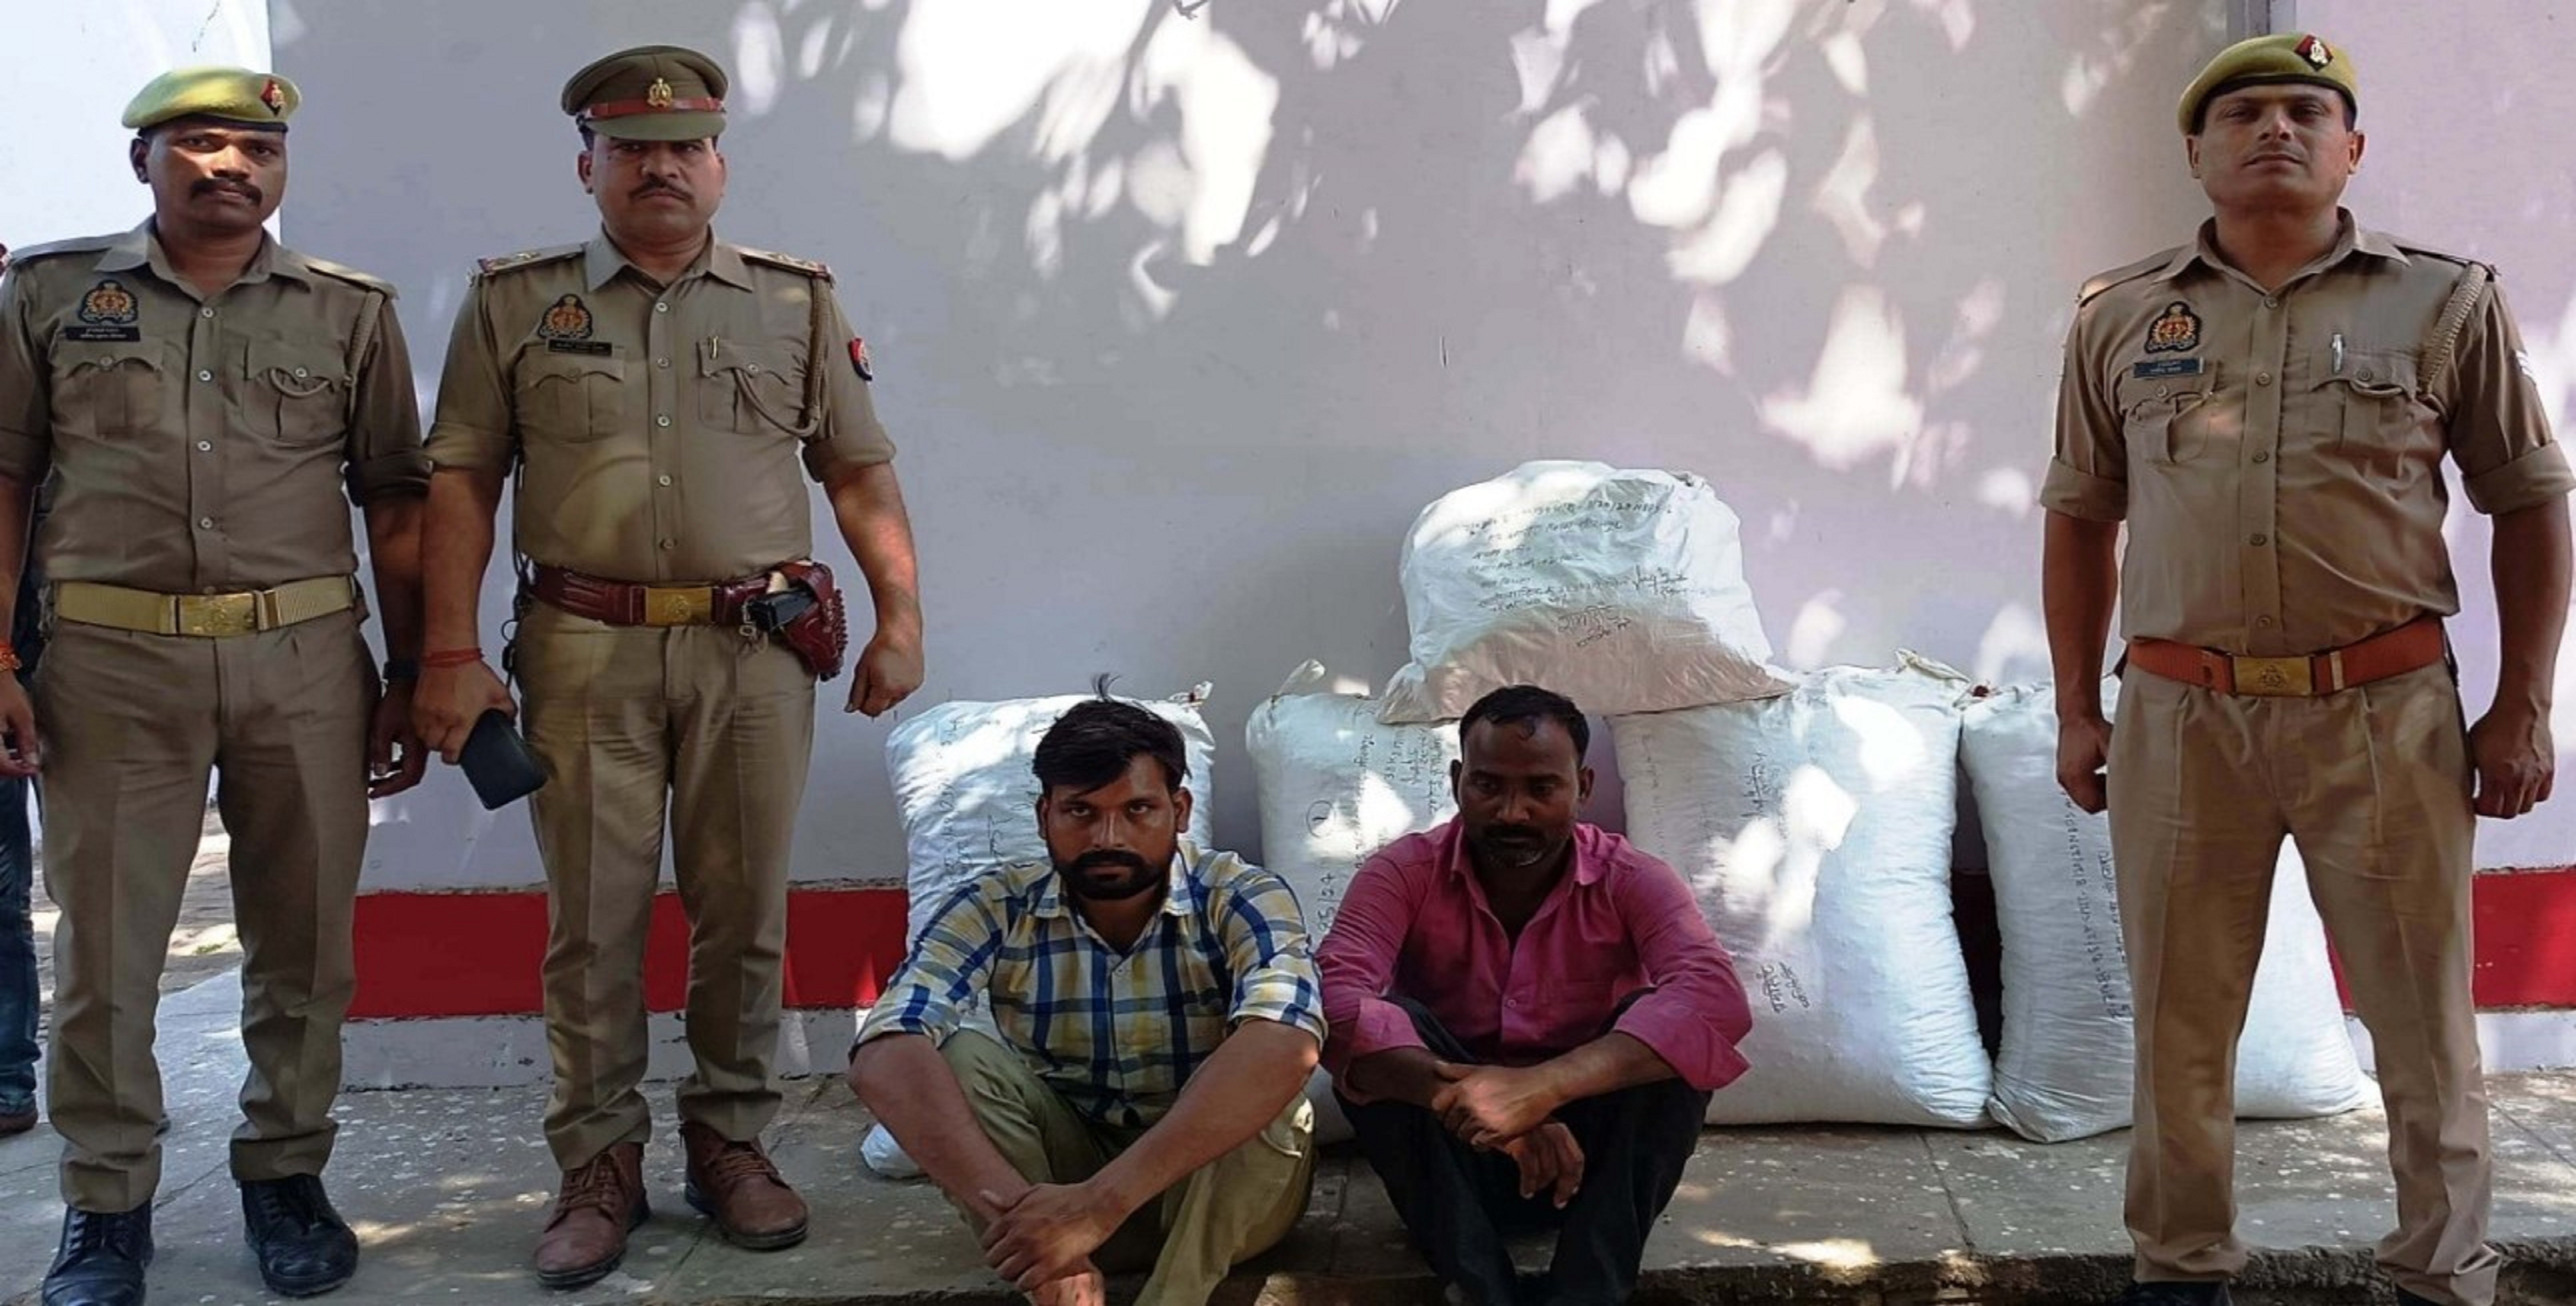 उडीसा से कानपुर जा रहा 45 लाख का गांजा बरामद, दो अंतर्राज्यीय तस्कर गिरफ्तार